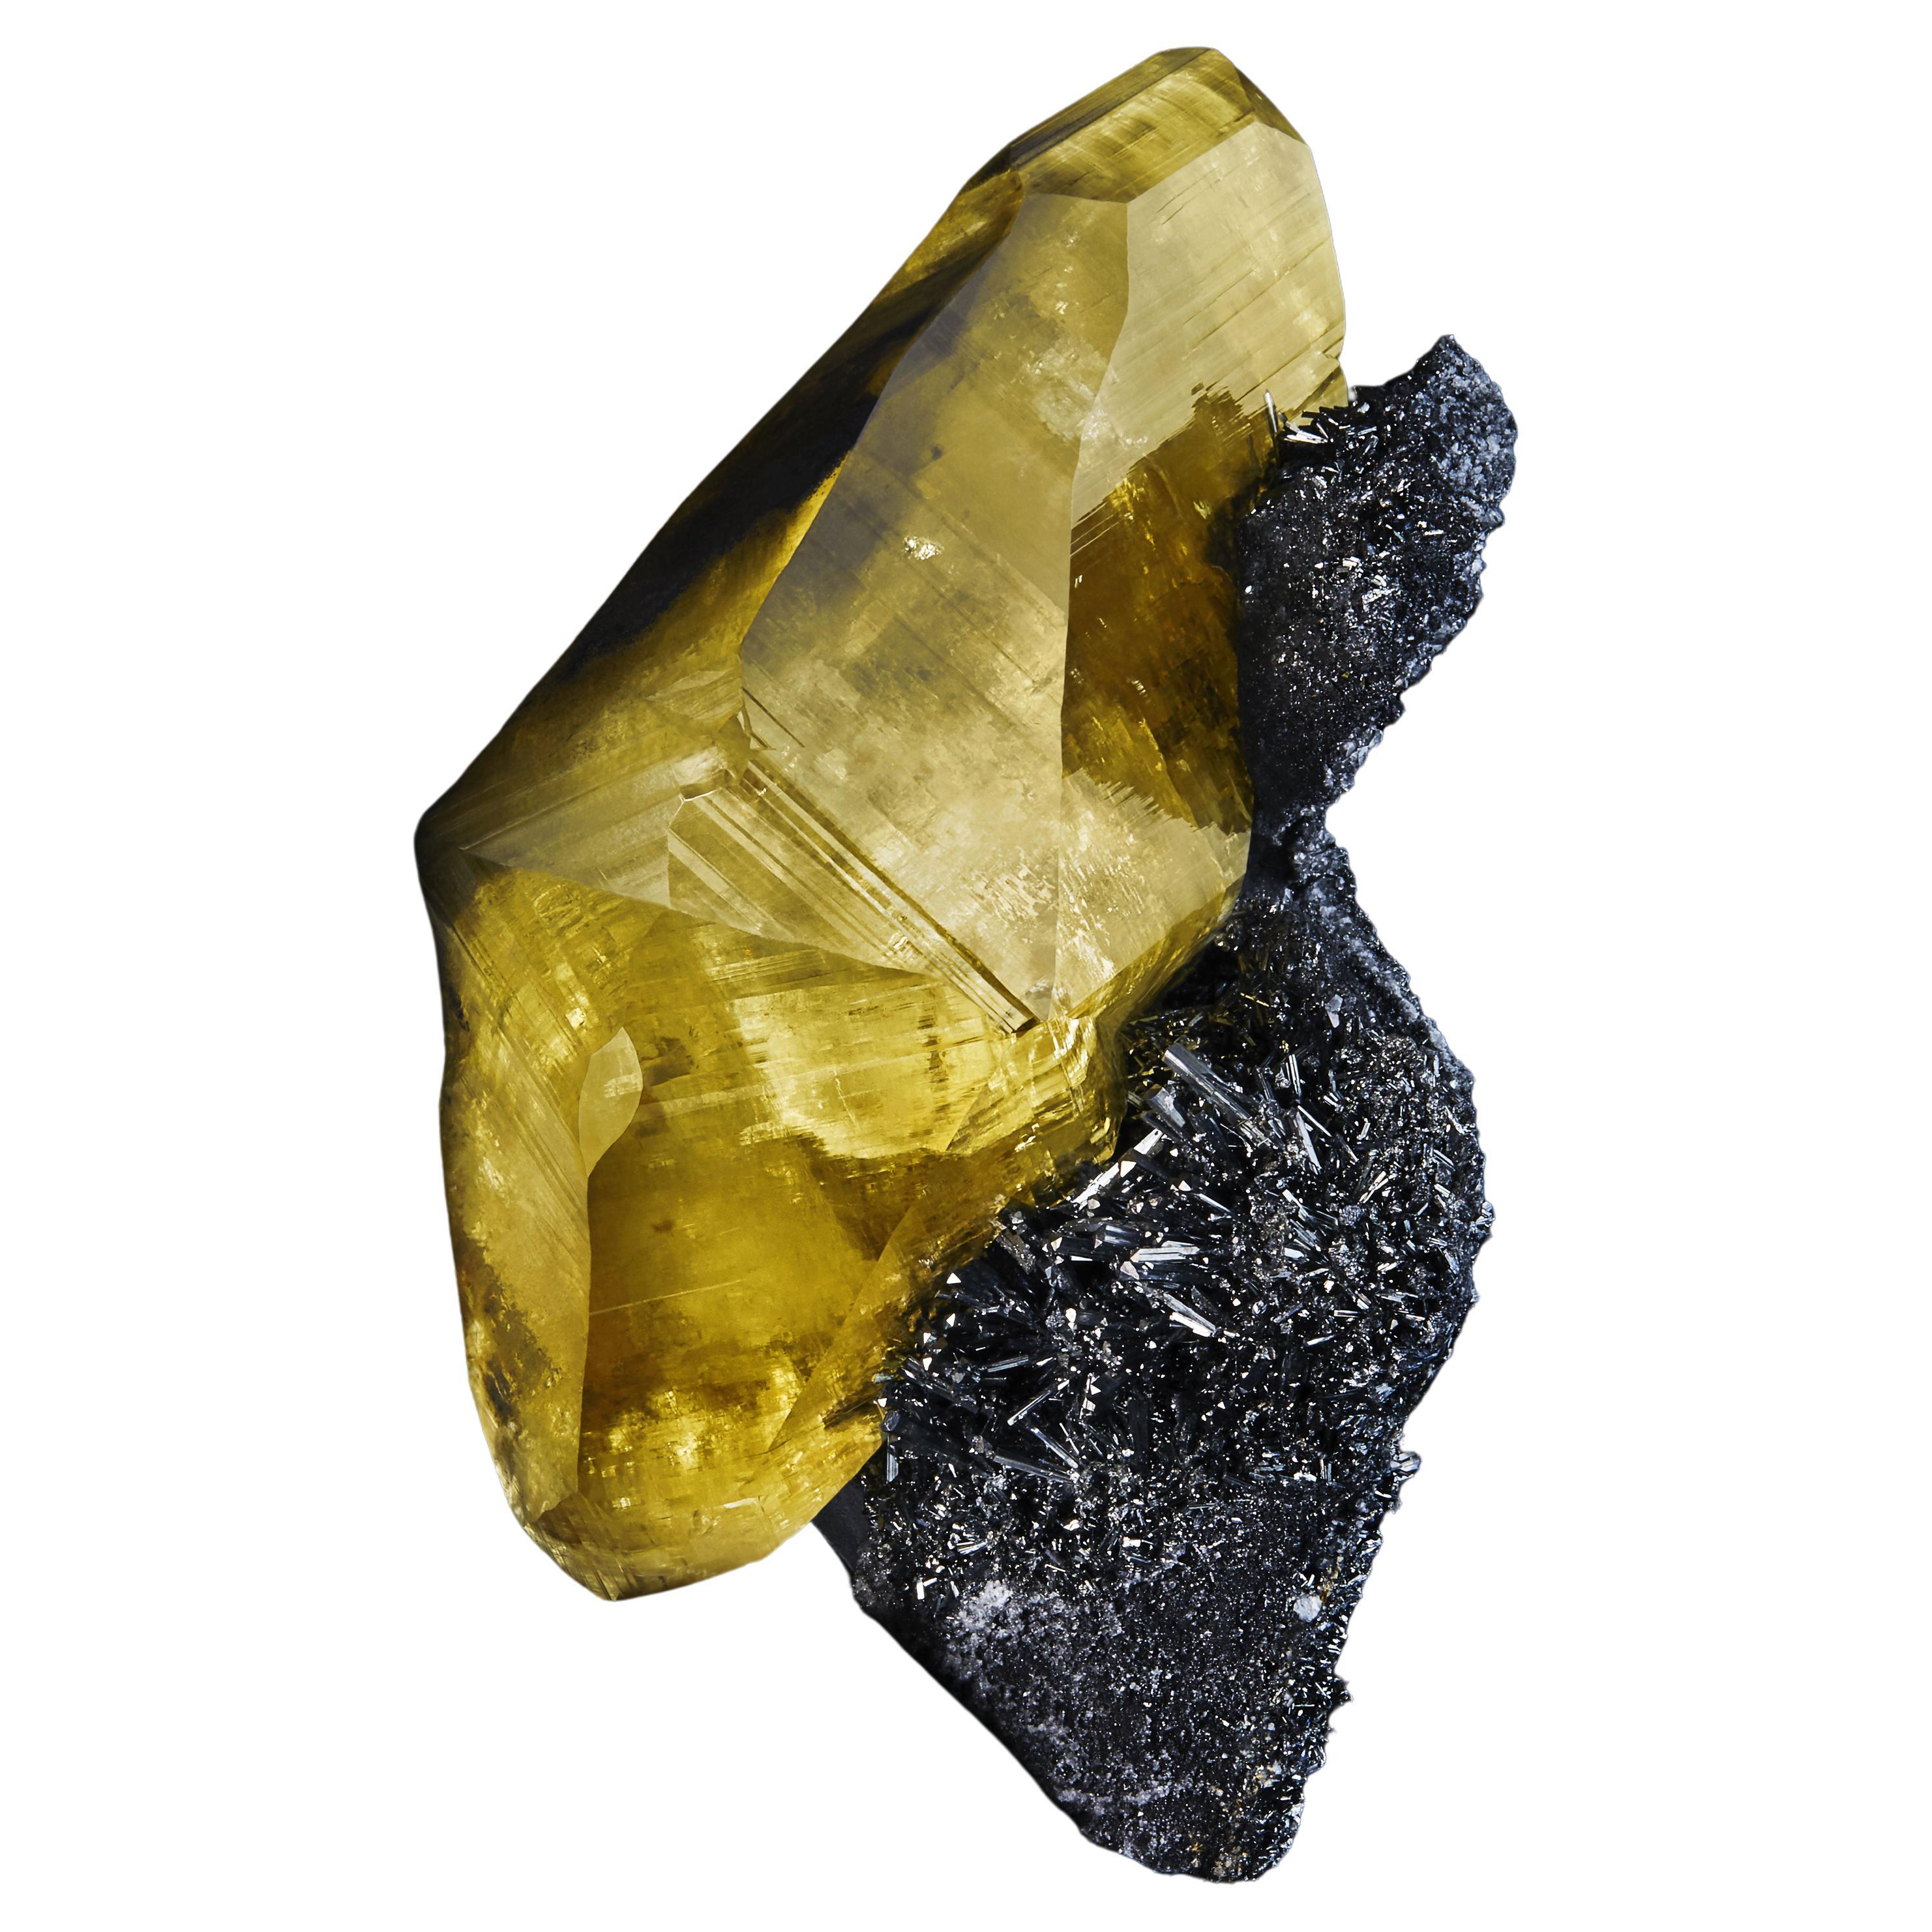 Calcite on Stibnite, Hechi Mining Area, Guangxi Region, China